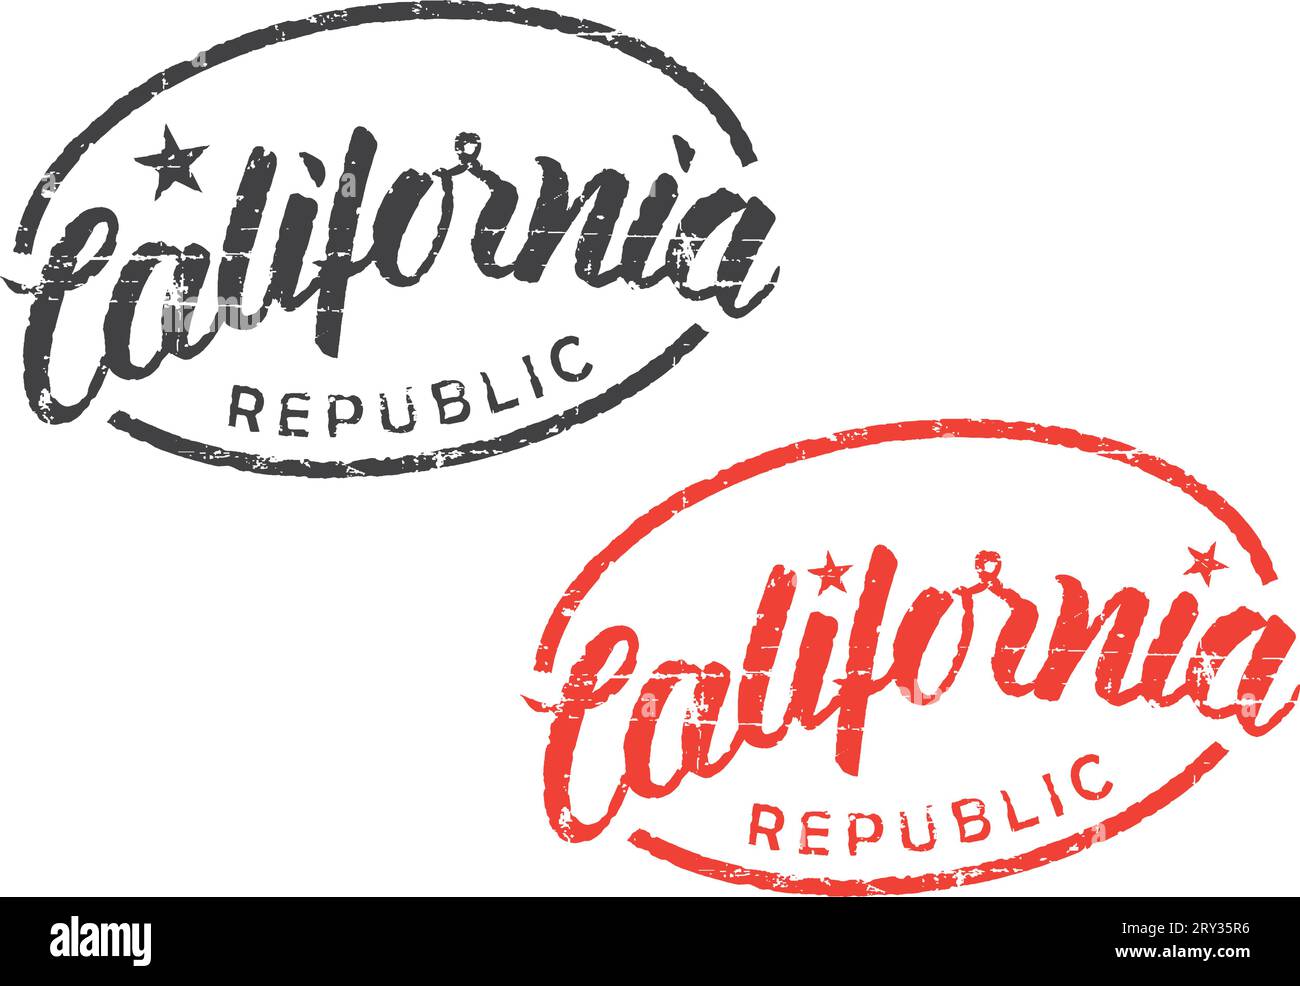 Schwarze und rote Handschriftstempel ''California Republic'' für Dokumente, T-Shirt, Postkarte, Poster... Weißer Hintergrund. Stock Vektor